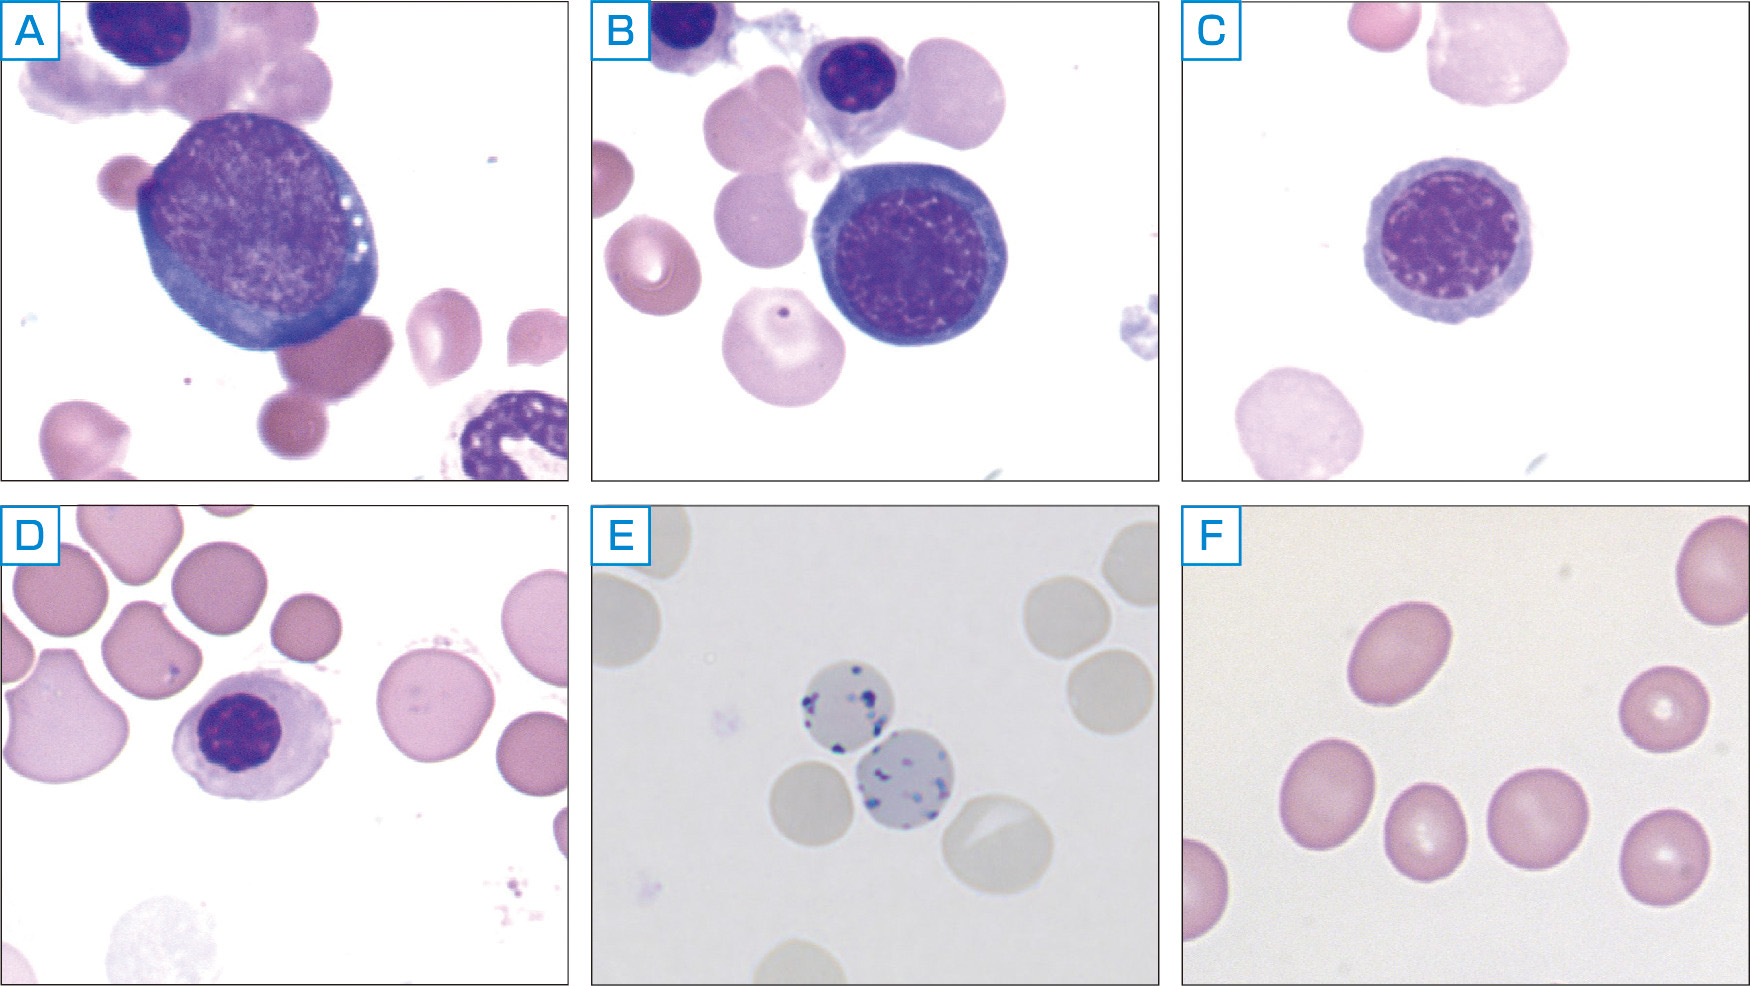 ⓔ図17-3-2　赤芽球，網赤血球，赤血球の形態 前赤芽球 (A) は直径が20～25 µmで核小体が明瞭で塩基性が強い．好塩基性赤芽球 (B) は直径が16～18 µmとやや小型で細胞質はやや塩基性，核小体はやや不明瞭になる．多染性赤芽球 (C) は直径が12～15 µm，細胞質の青みが減少し，ヘモグロビンが増加するため赤味が増す．正染性赤芽球 (D) は，直径10～15 µm，細胞質の色調は赤血球と同様で，核網はより濃縮している．網赤血球 (E) は，残存したリボソームが青色網状に染まる．赤血球の85％がヘモグロビンである．